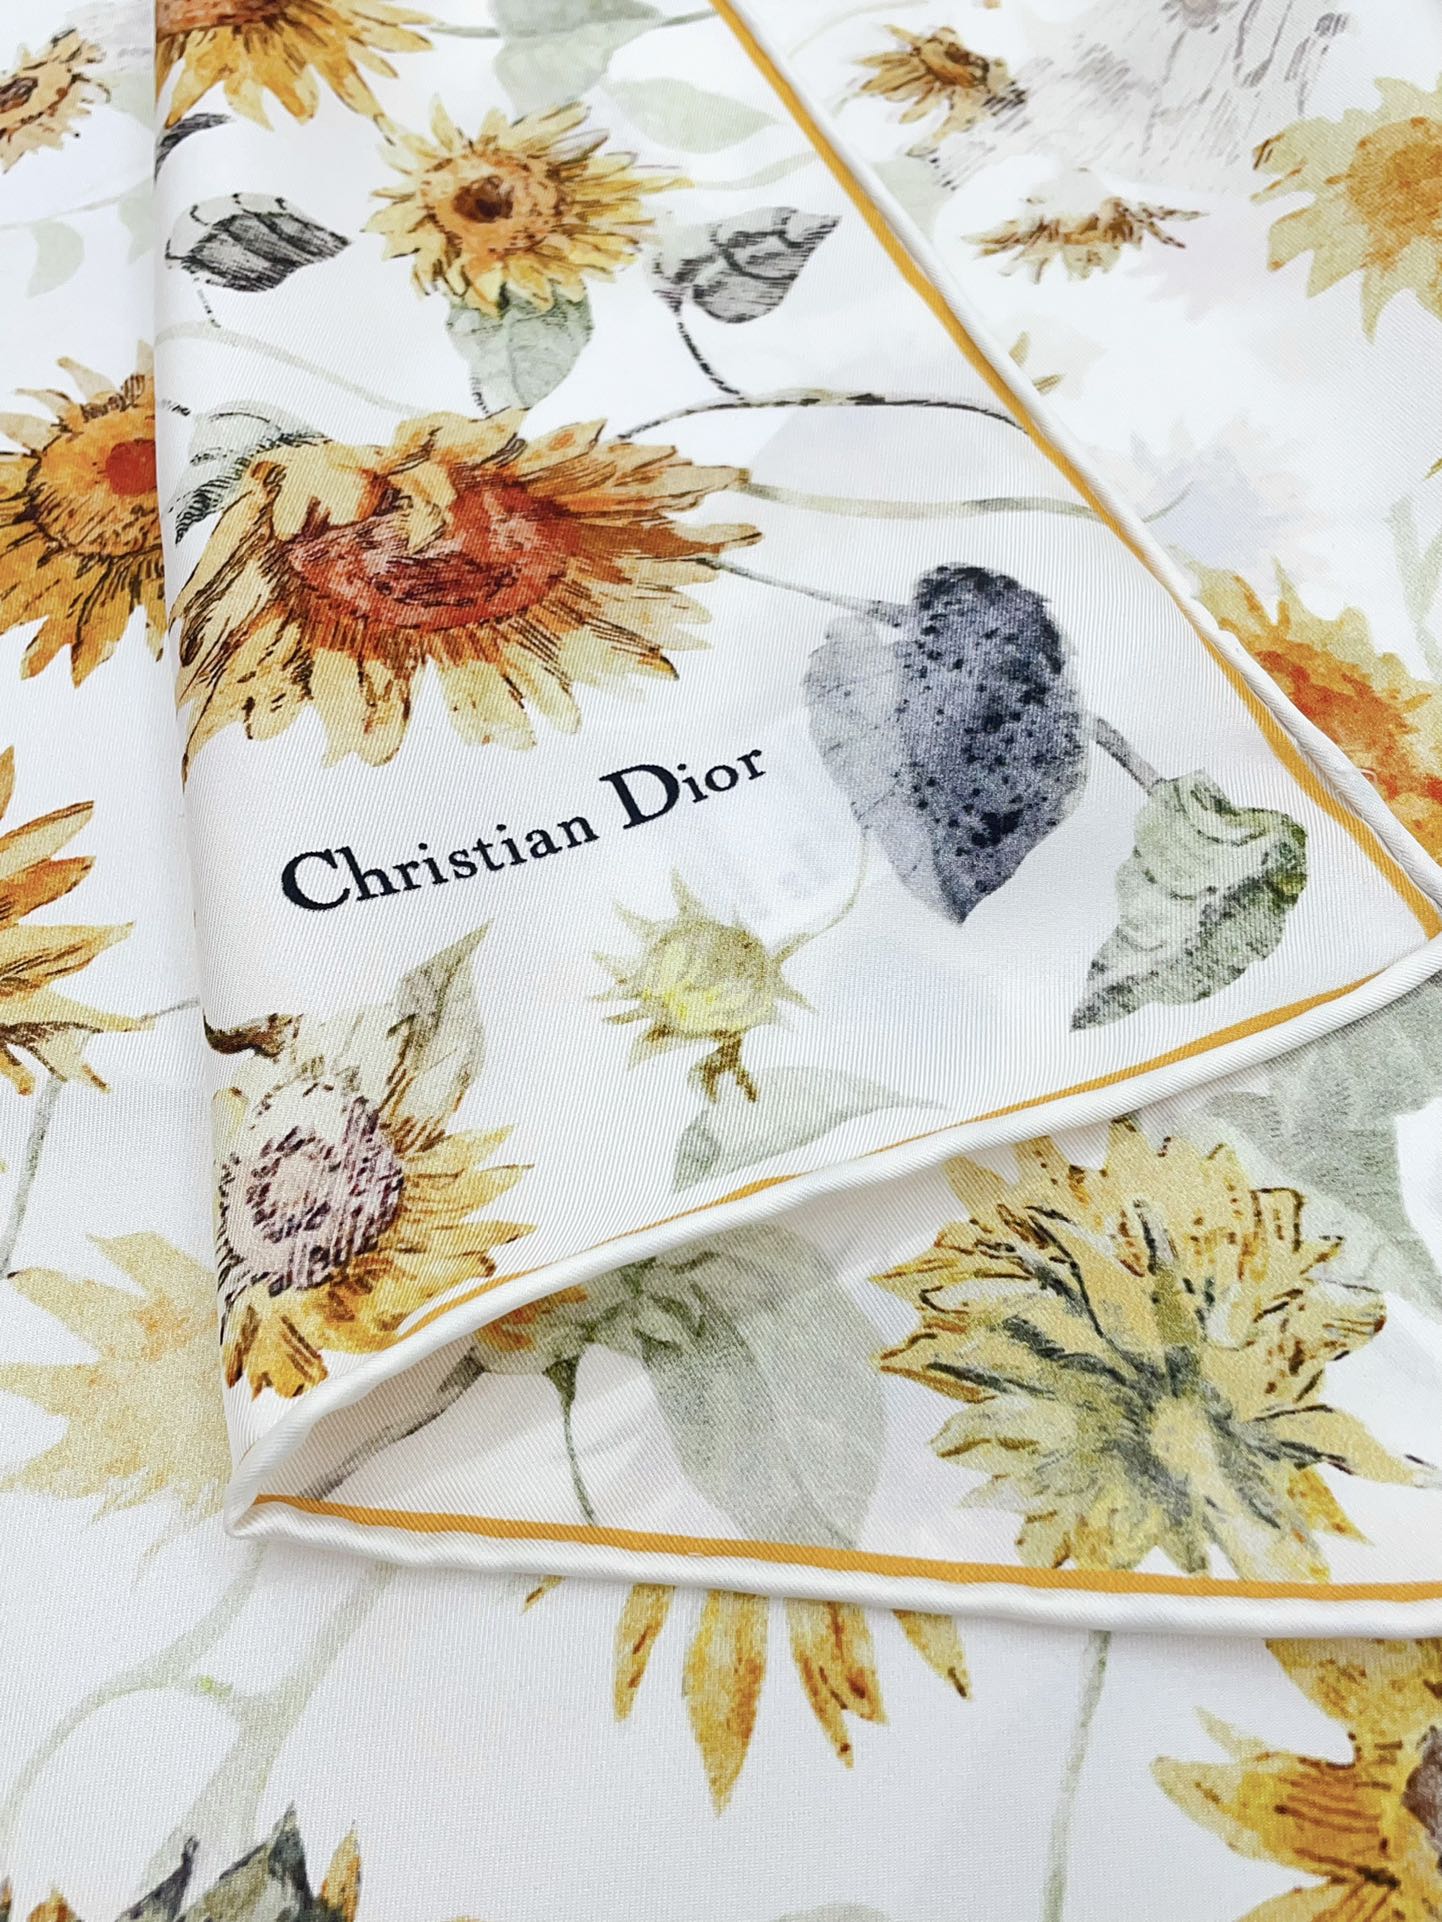 姆米双面同色这款LeBaldesFleursTournesol方巾展现富有诗意的花卉印花致敬Dior先生